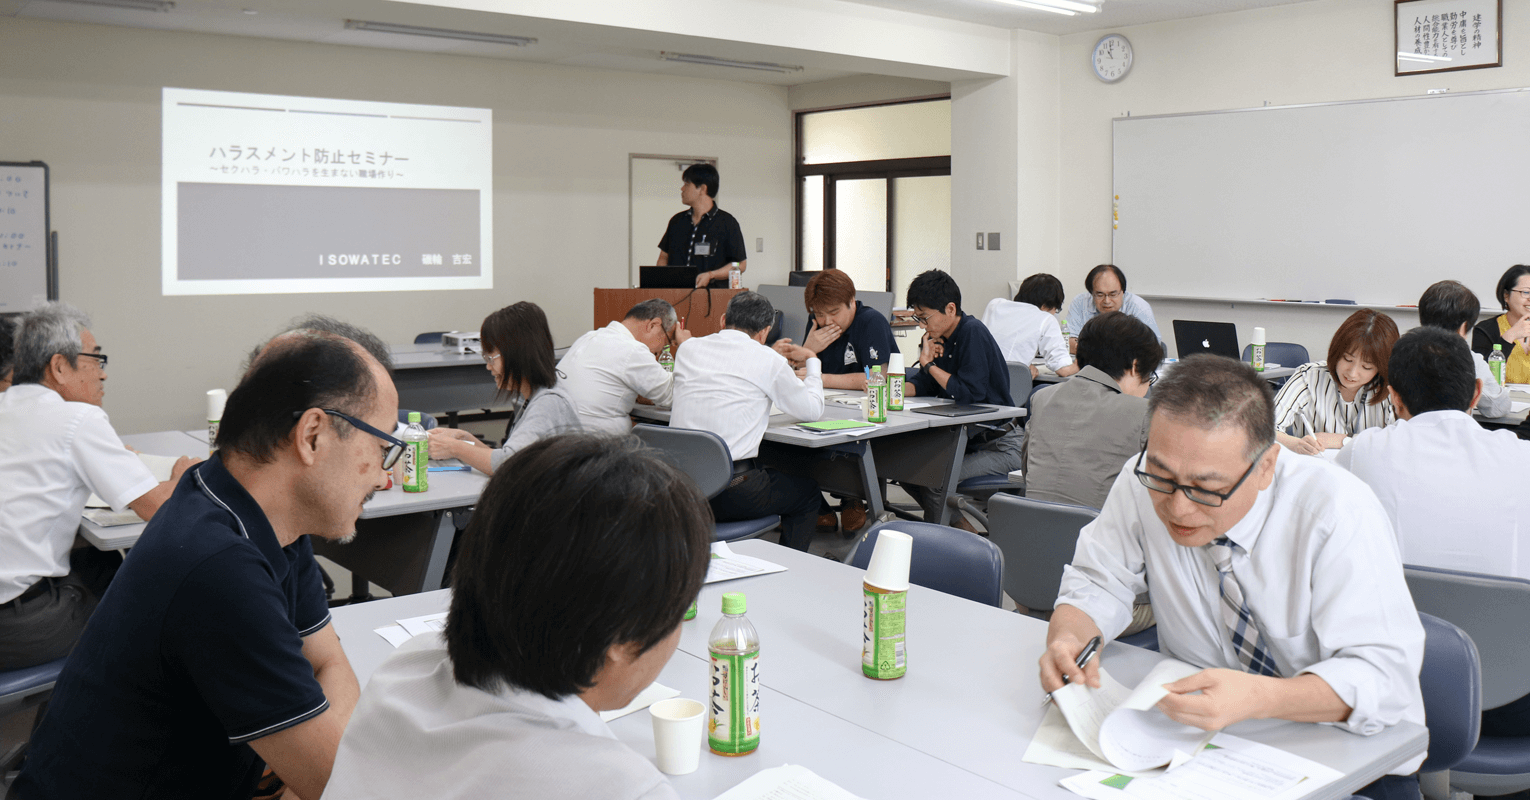 ハラスメント防止セミナー 教職員 日本総合ビジネス専門学校 大垣